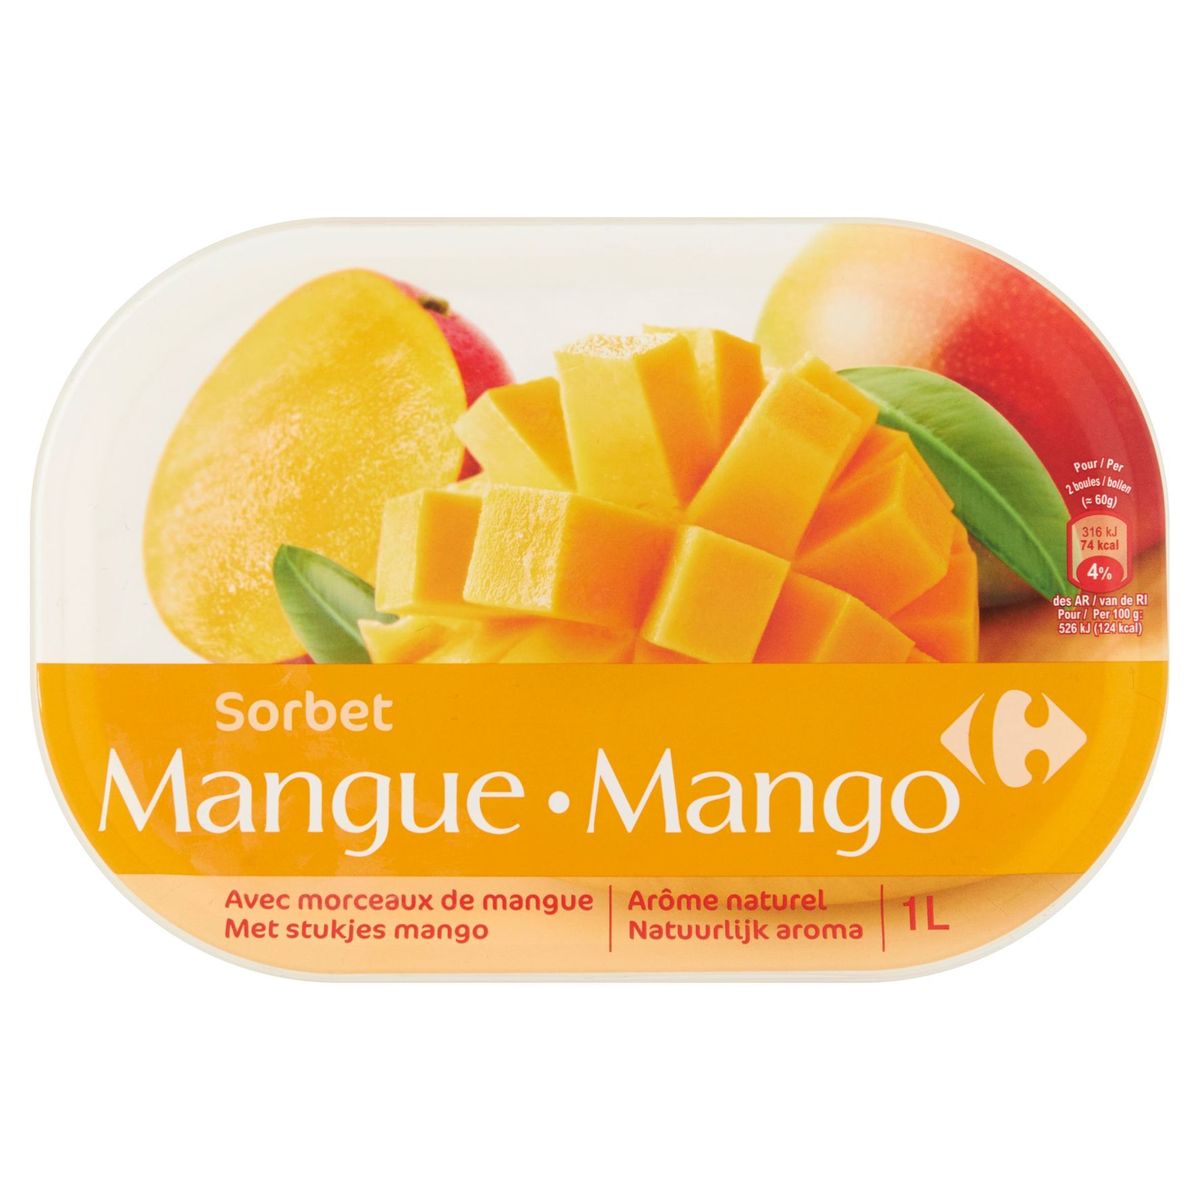 Carrefour Sorbet Mango 600 g